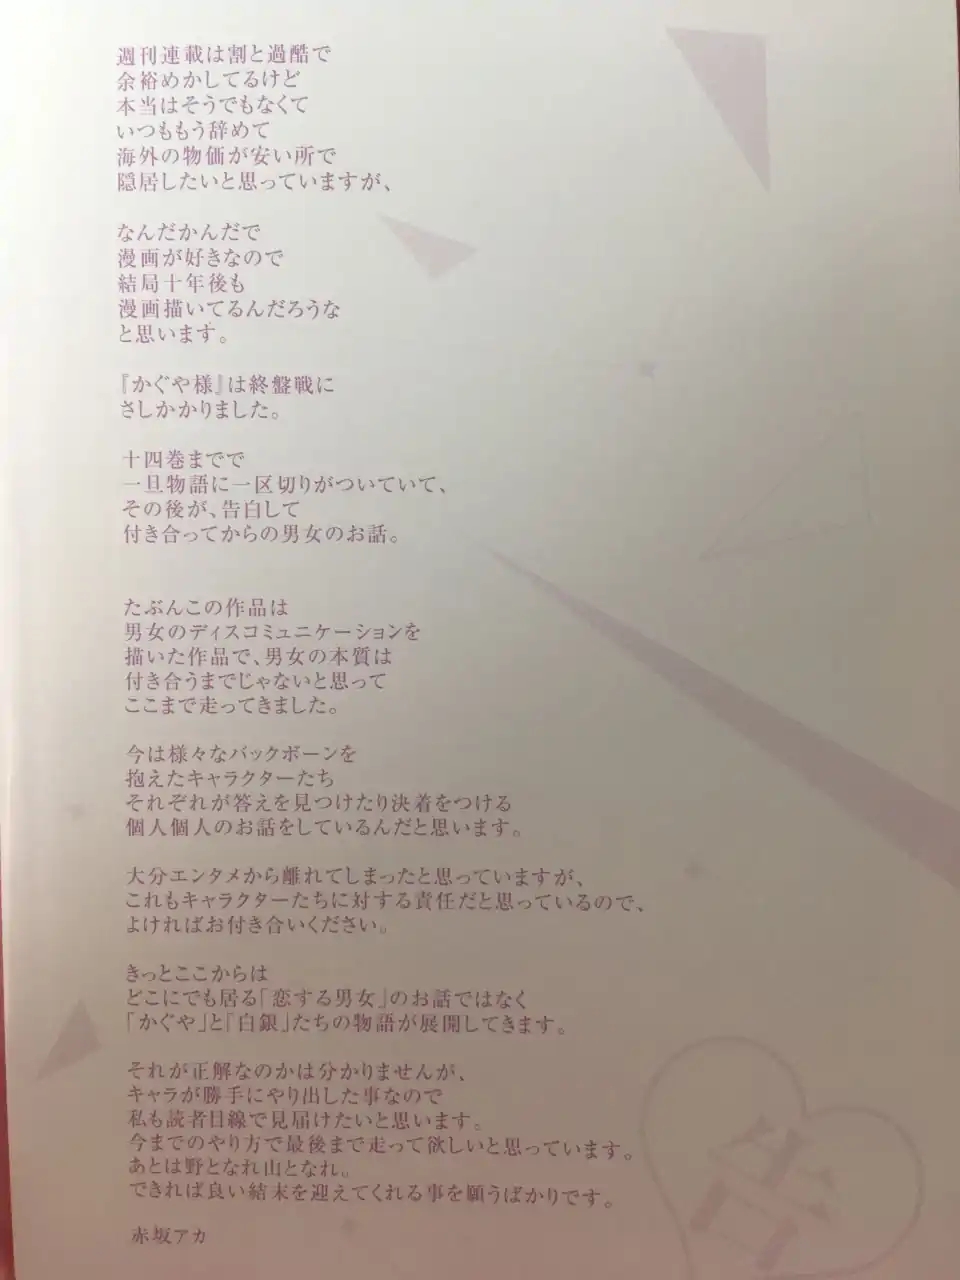 辉夜大小姐 22卷单行本作者留言 包含赤坂对自己作品内核的看法与向观众的感谢 搬运自贴吧nga玩家社区